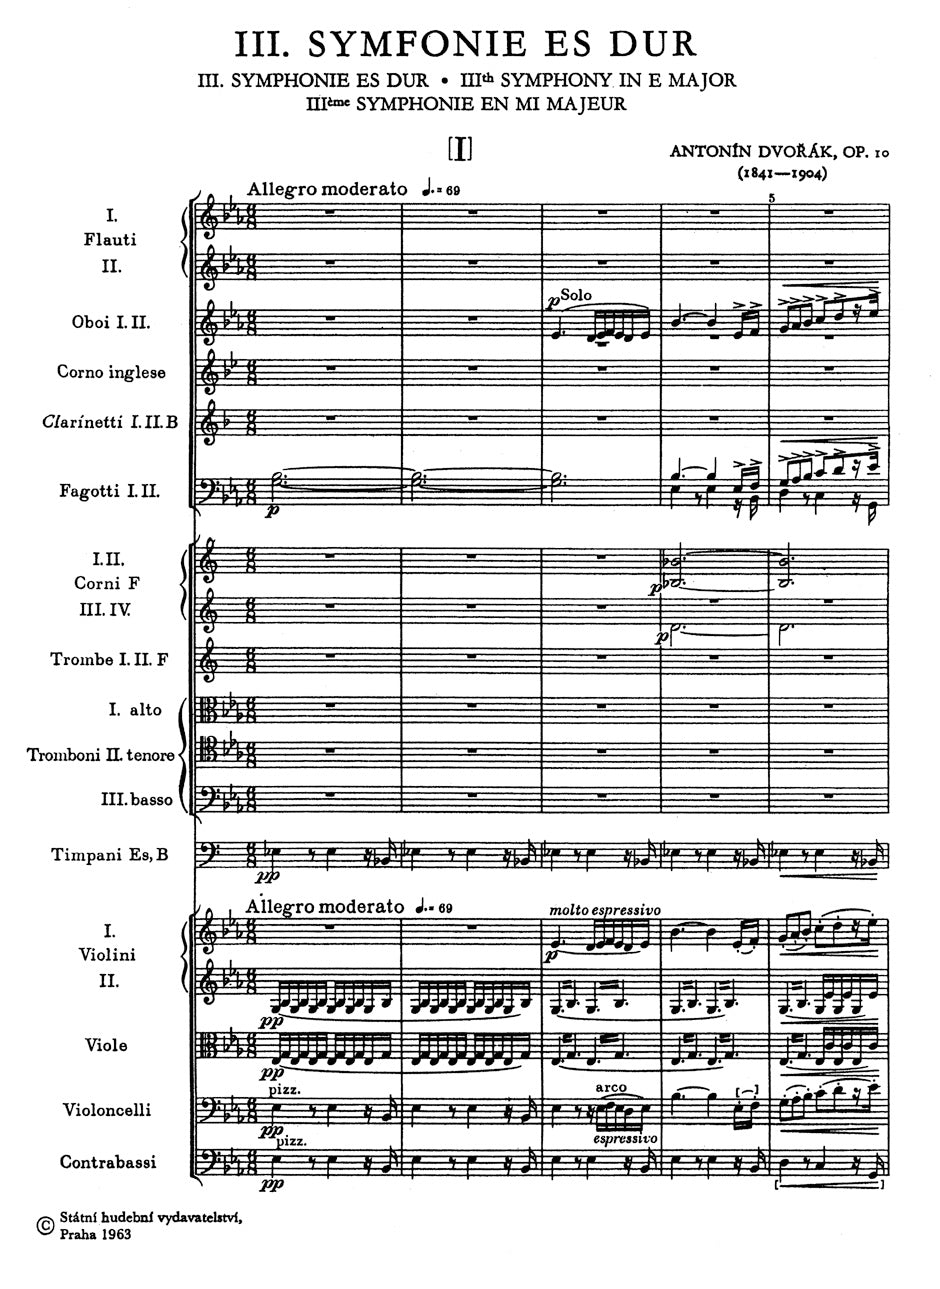 Dvorák Symphonie Nr. 3 Es-Dur op. 10